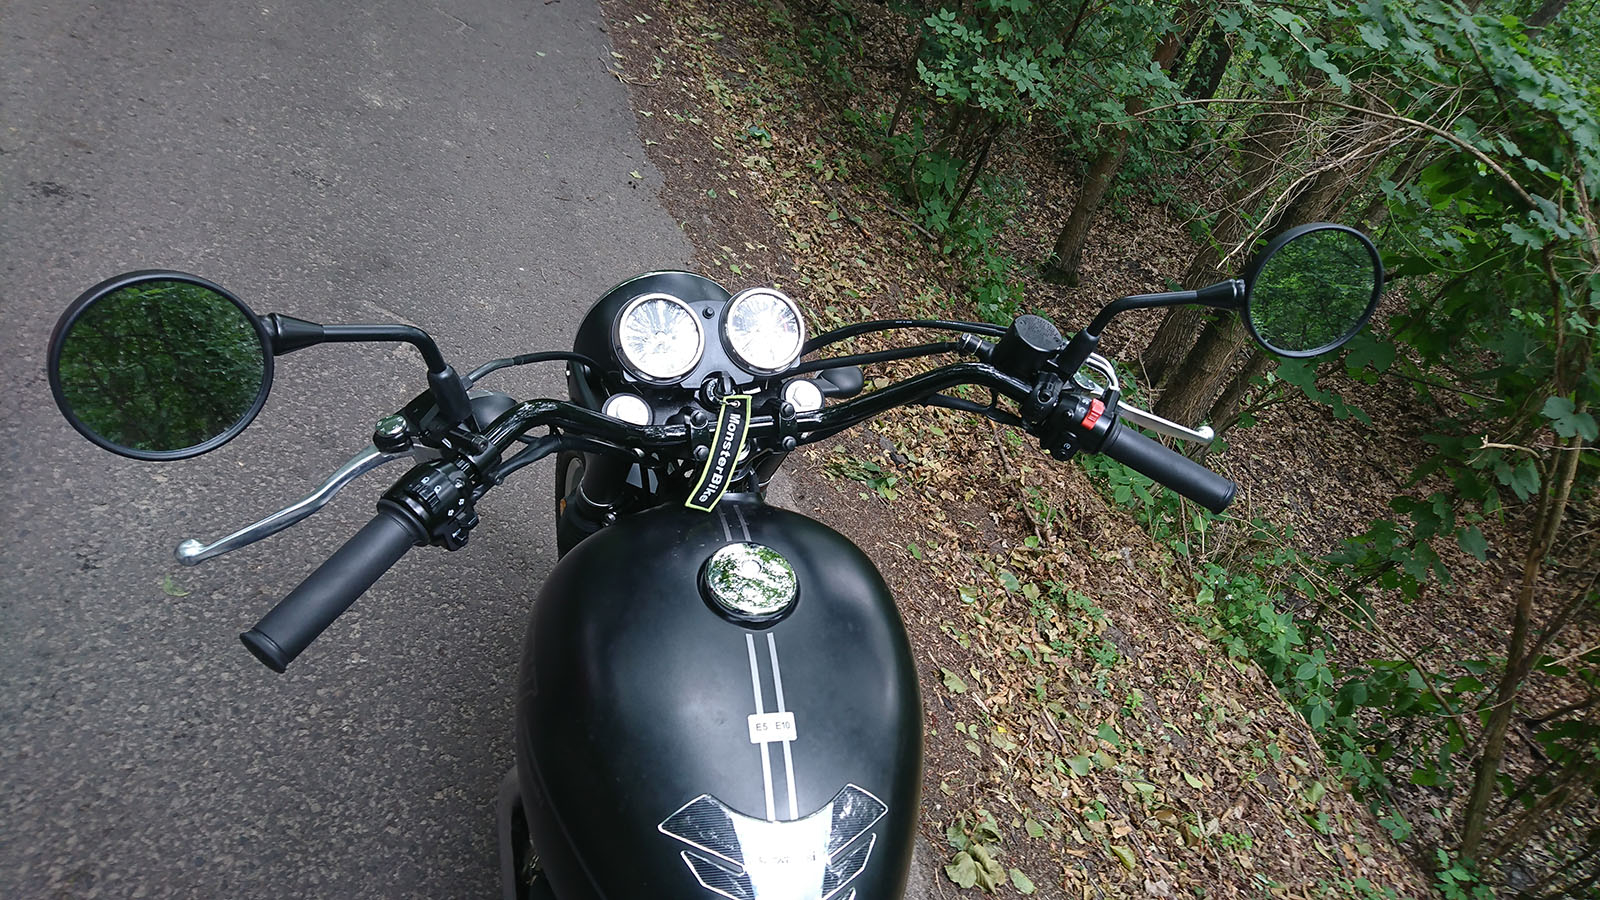 Kawasaki W800 Street - Klasyczny motocykl w nowym wydaniu